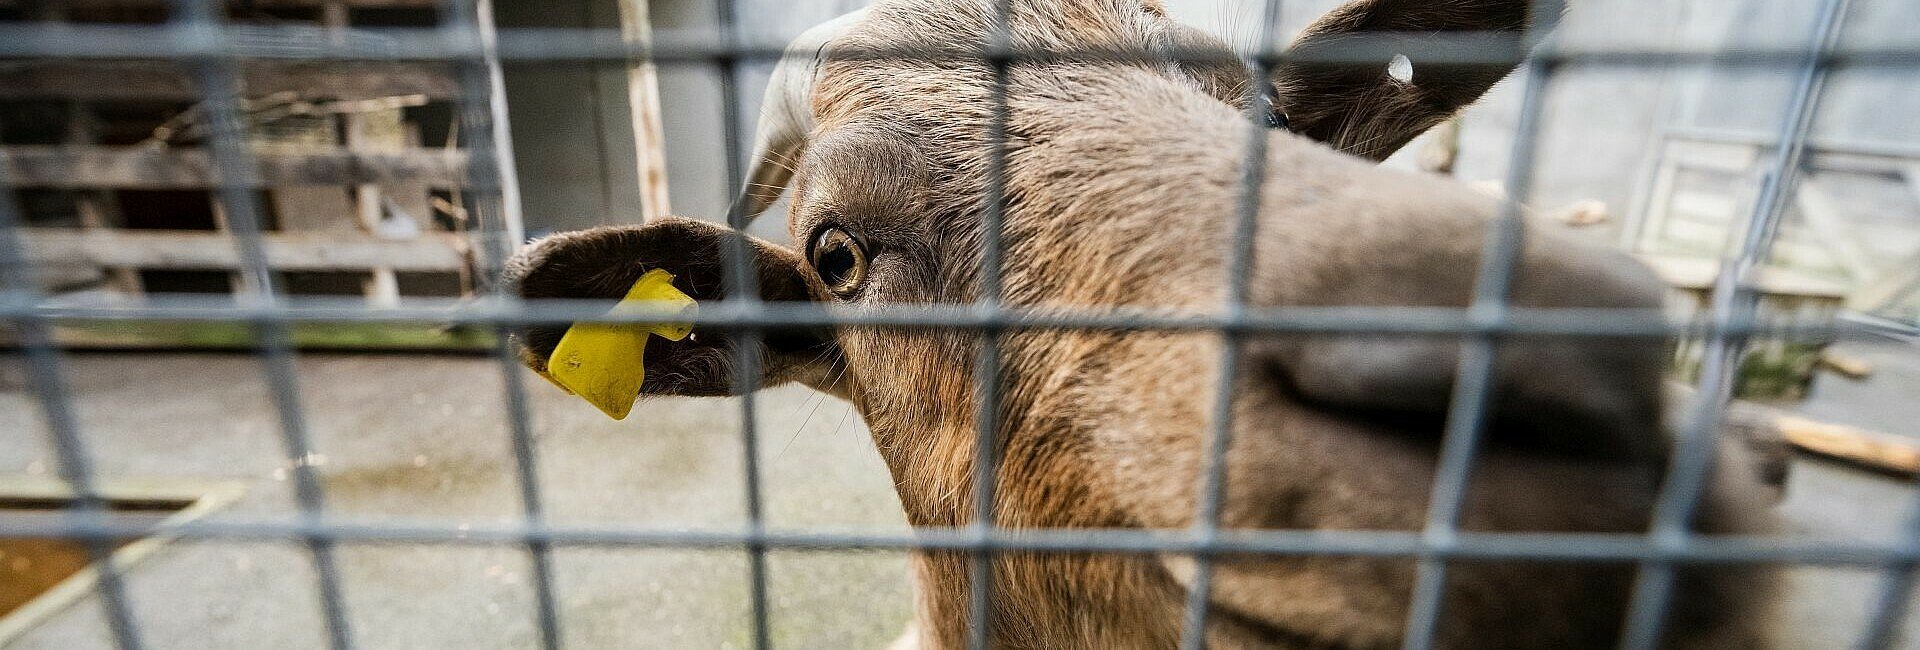 Ziege im Tierheim Zollstock begrüßt Besucher